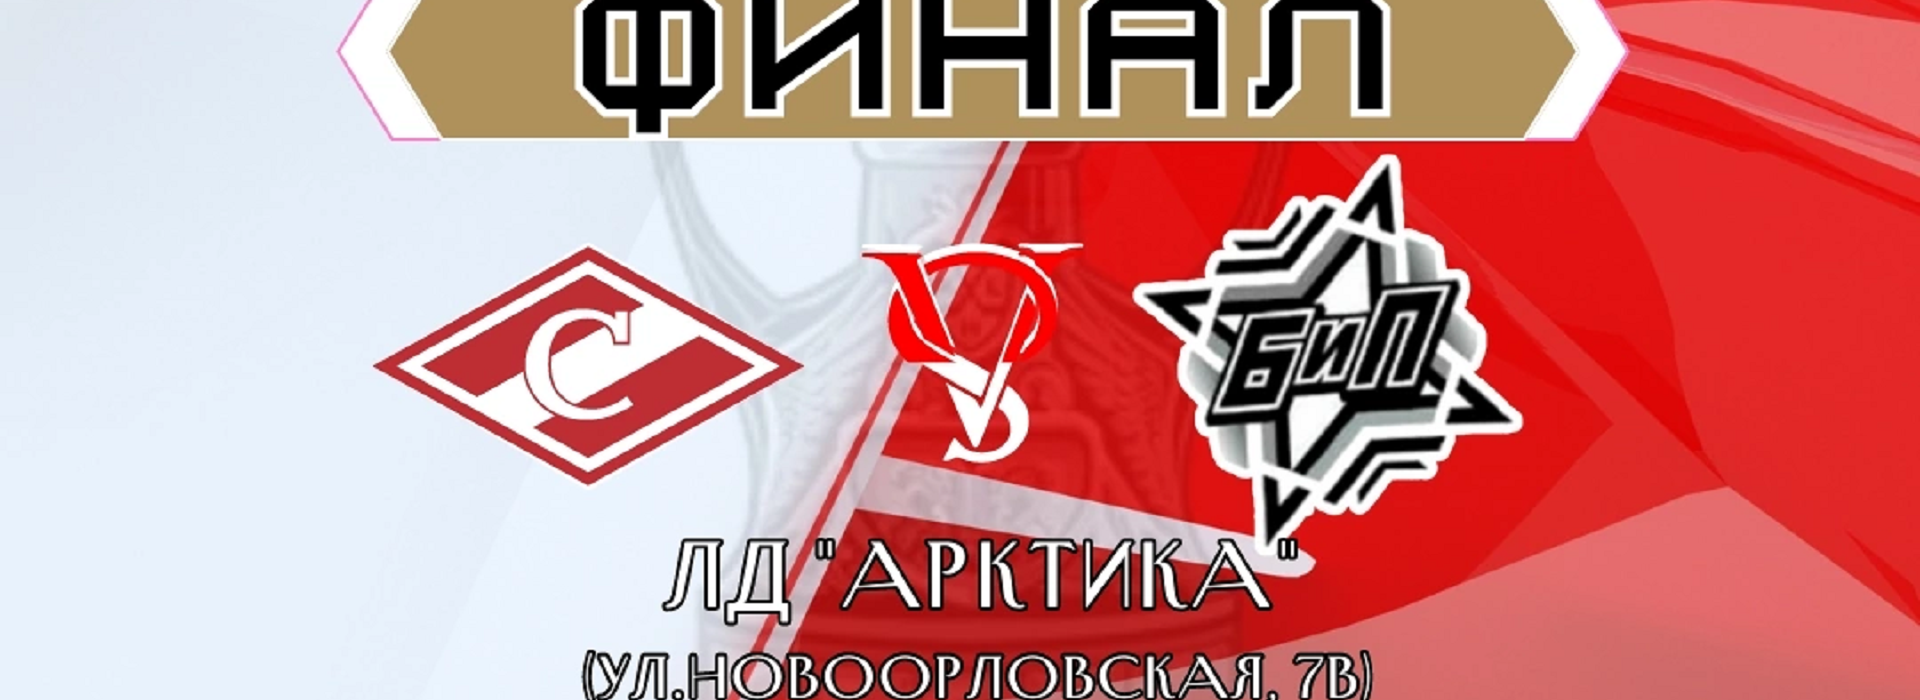 Поддержим ЛХК «Спартак» в финале чемпионата Москвы!